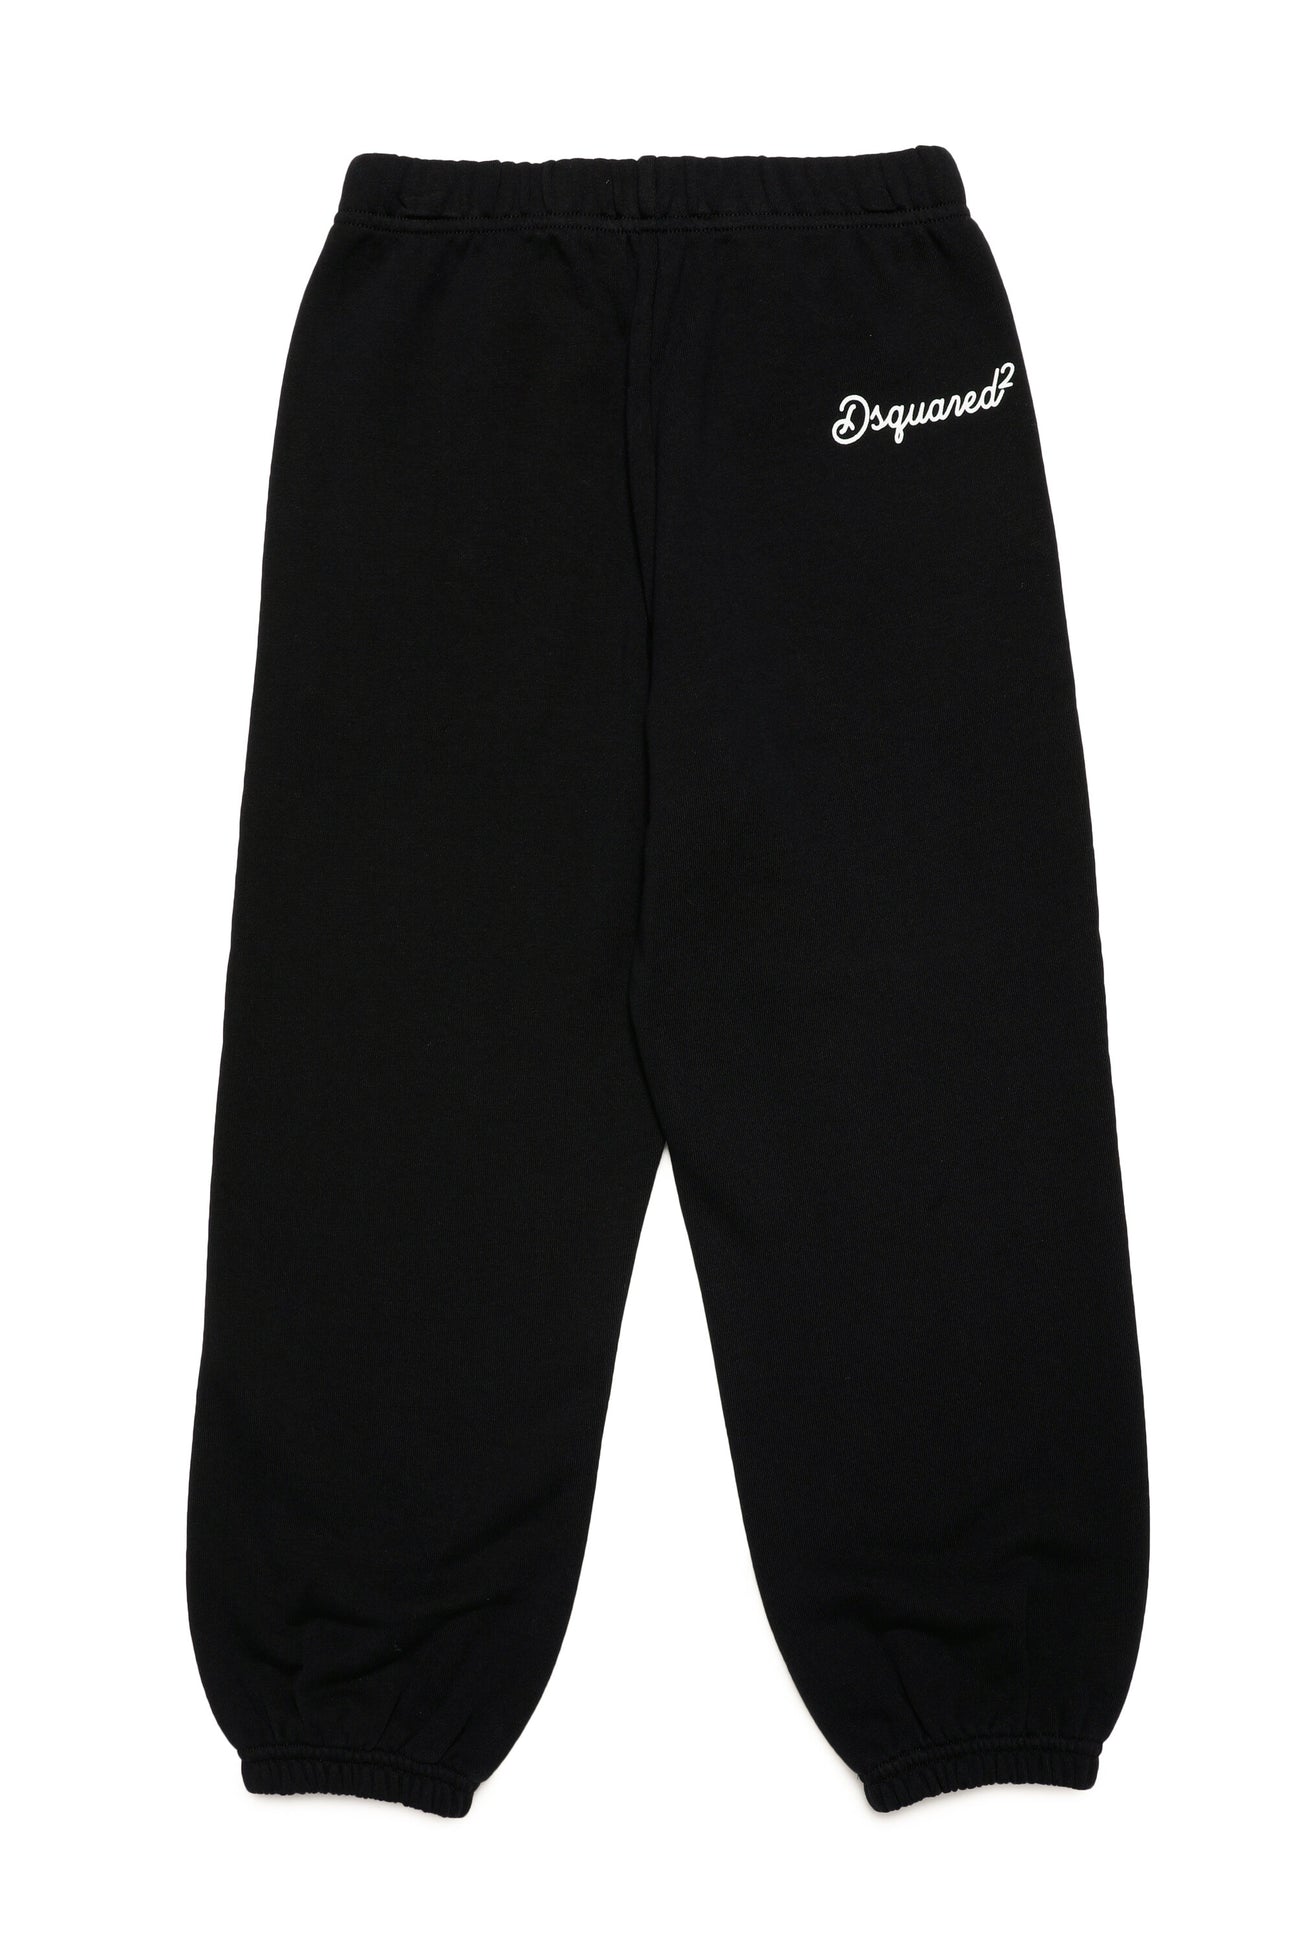 Pantalones deportivos de felpa con logotipo cursiva Pantalones deportivos de felpa con logotipo cursiva